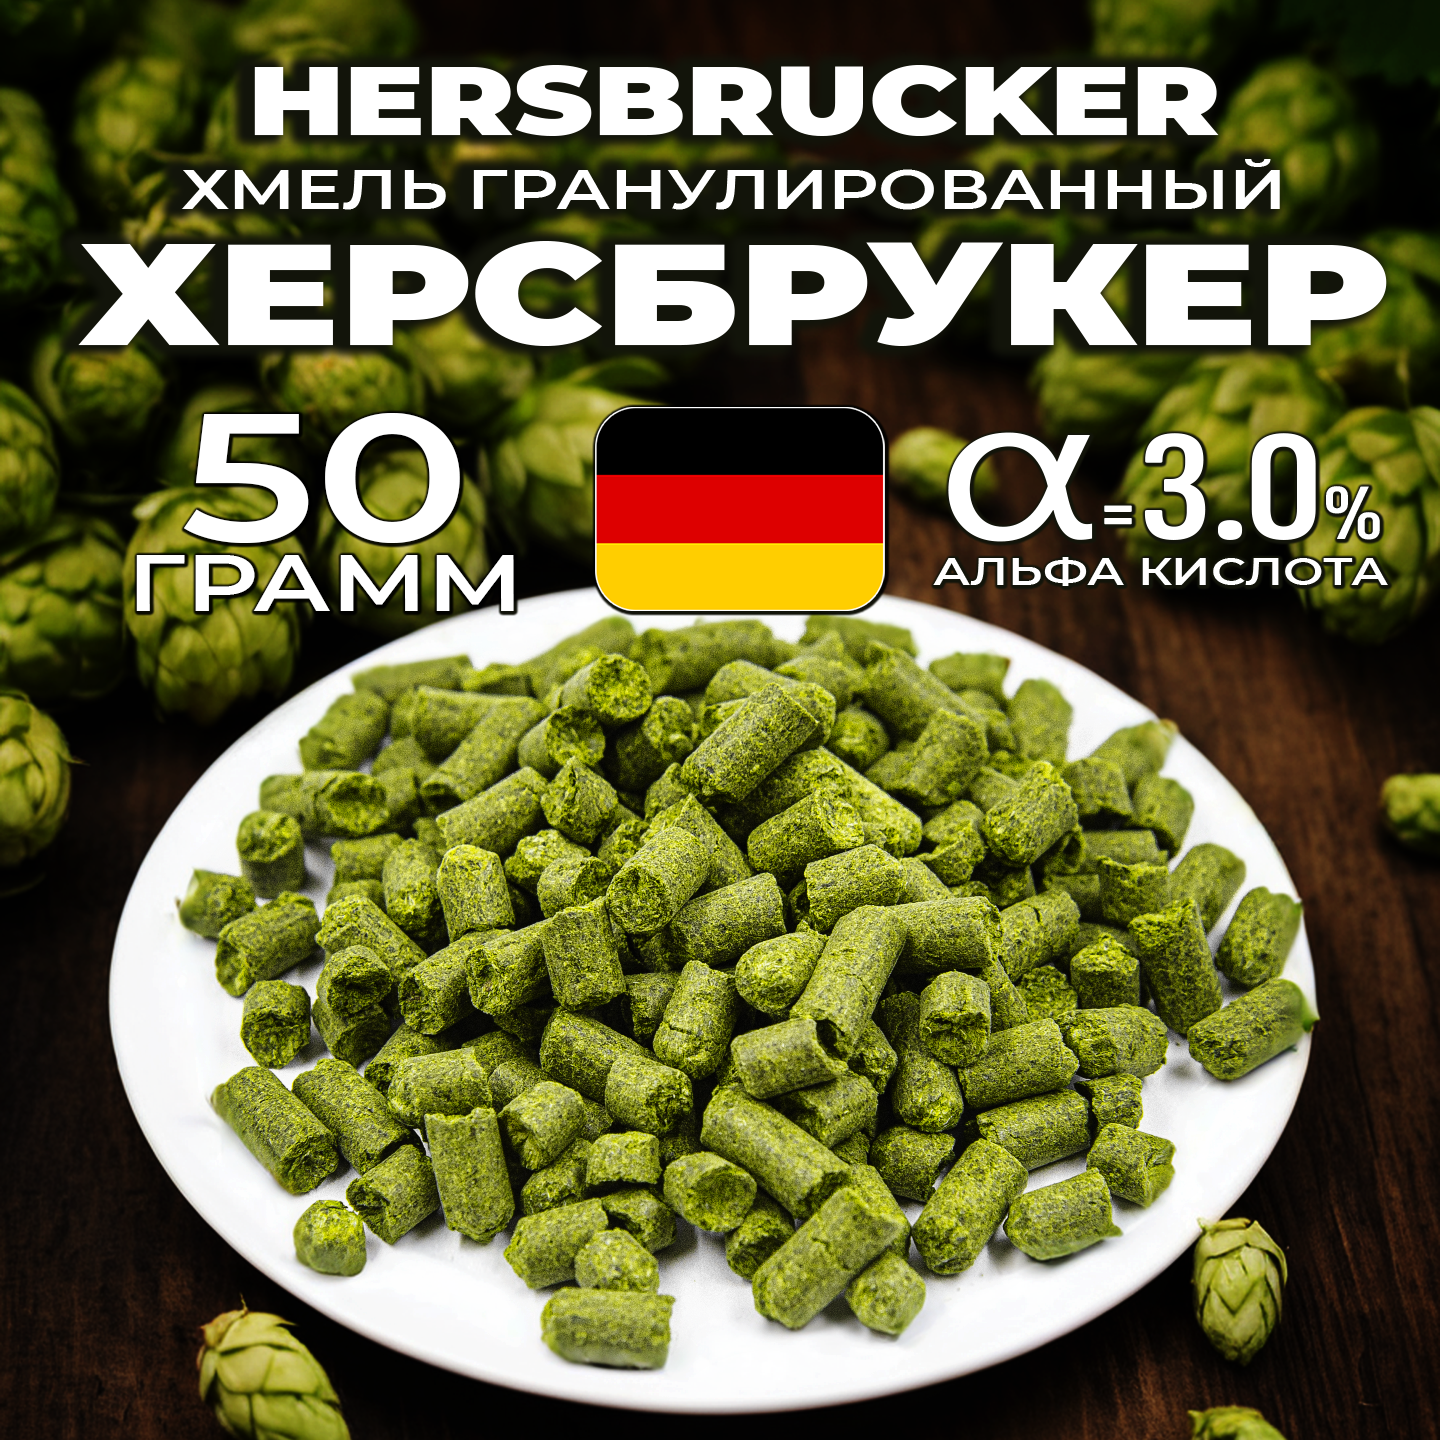 Хмель для пива Херсбрукер (Hersbrucker) гранулированный, ароматный, 50 г